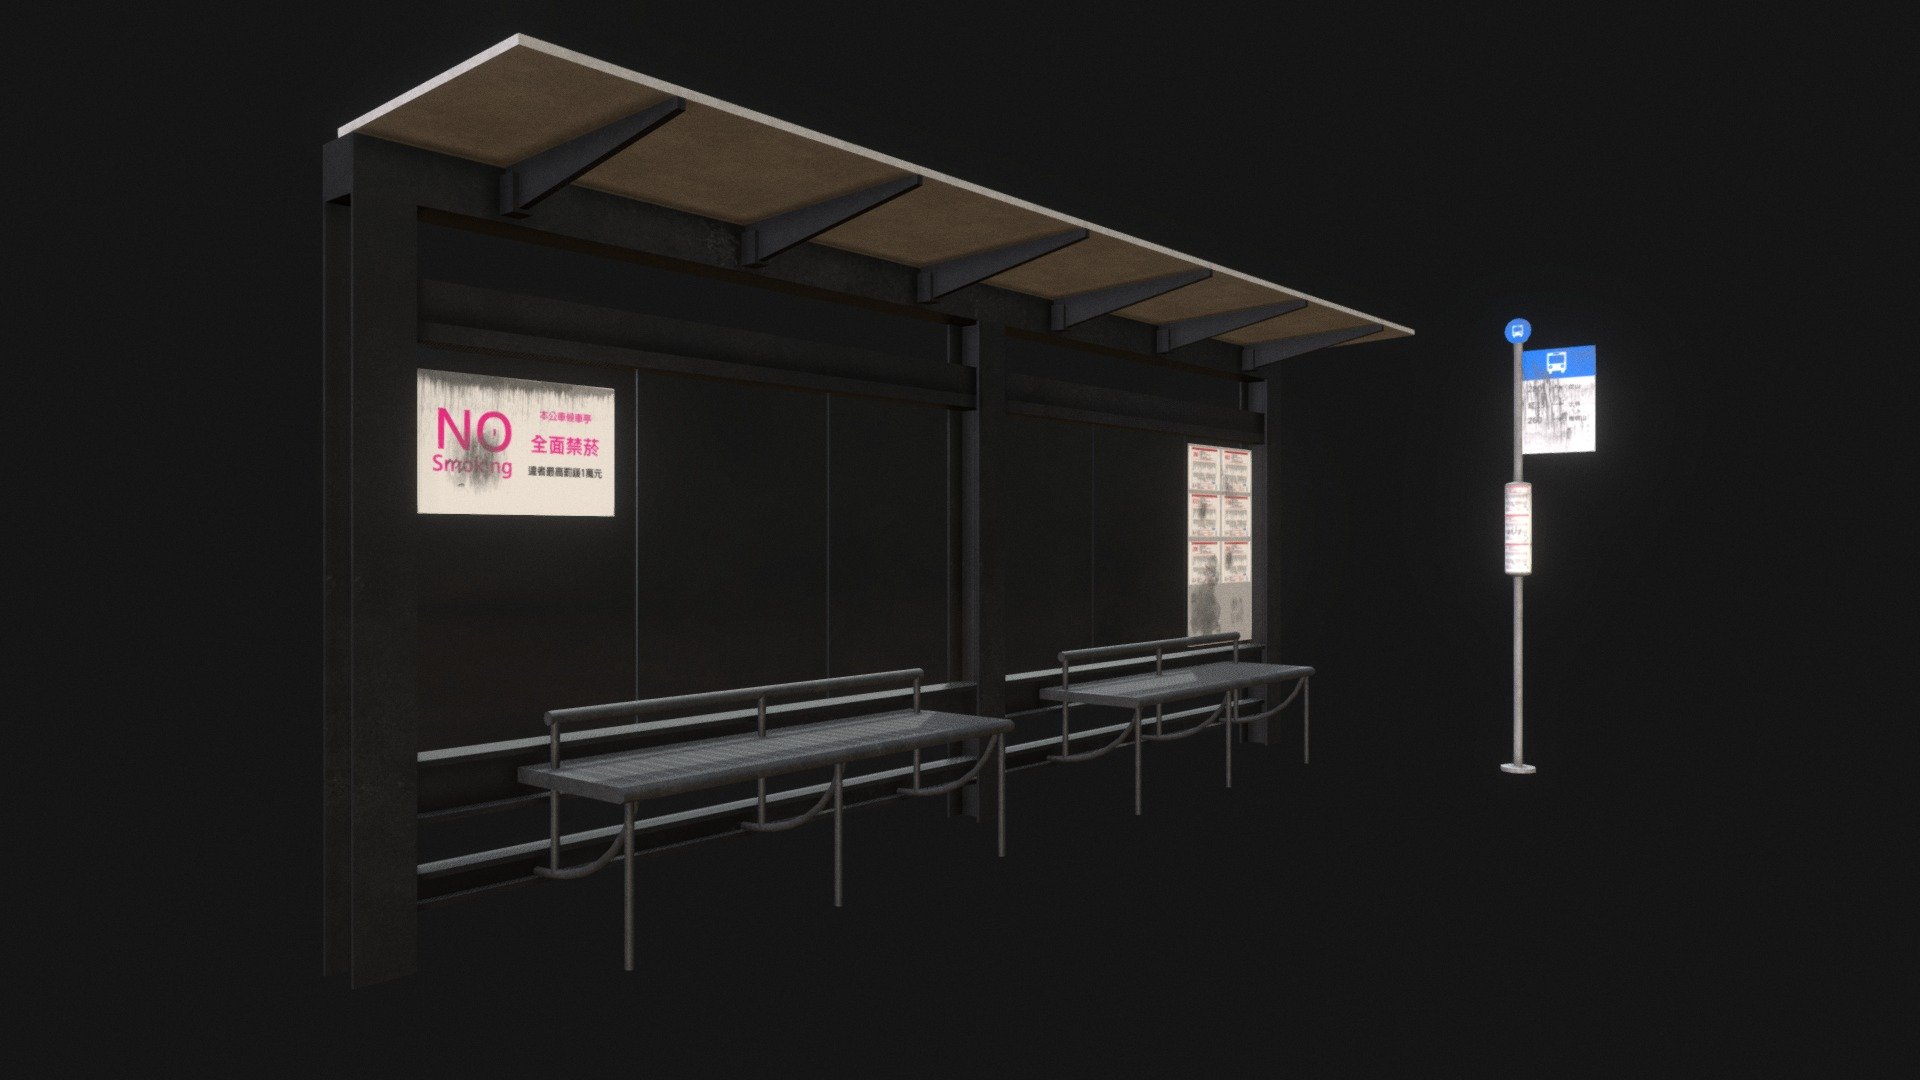 台灣街道公車站及站牌。 - bus_station_1 - 3D model by ChengShiun (@jgxtvccc) 3d model